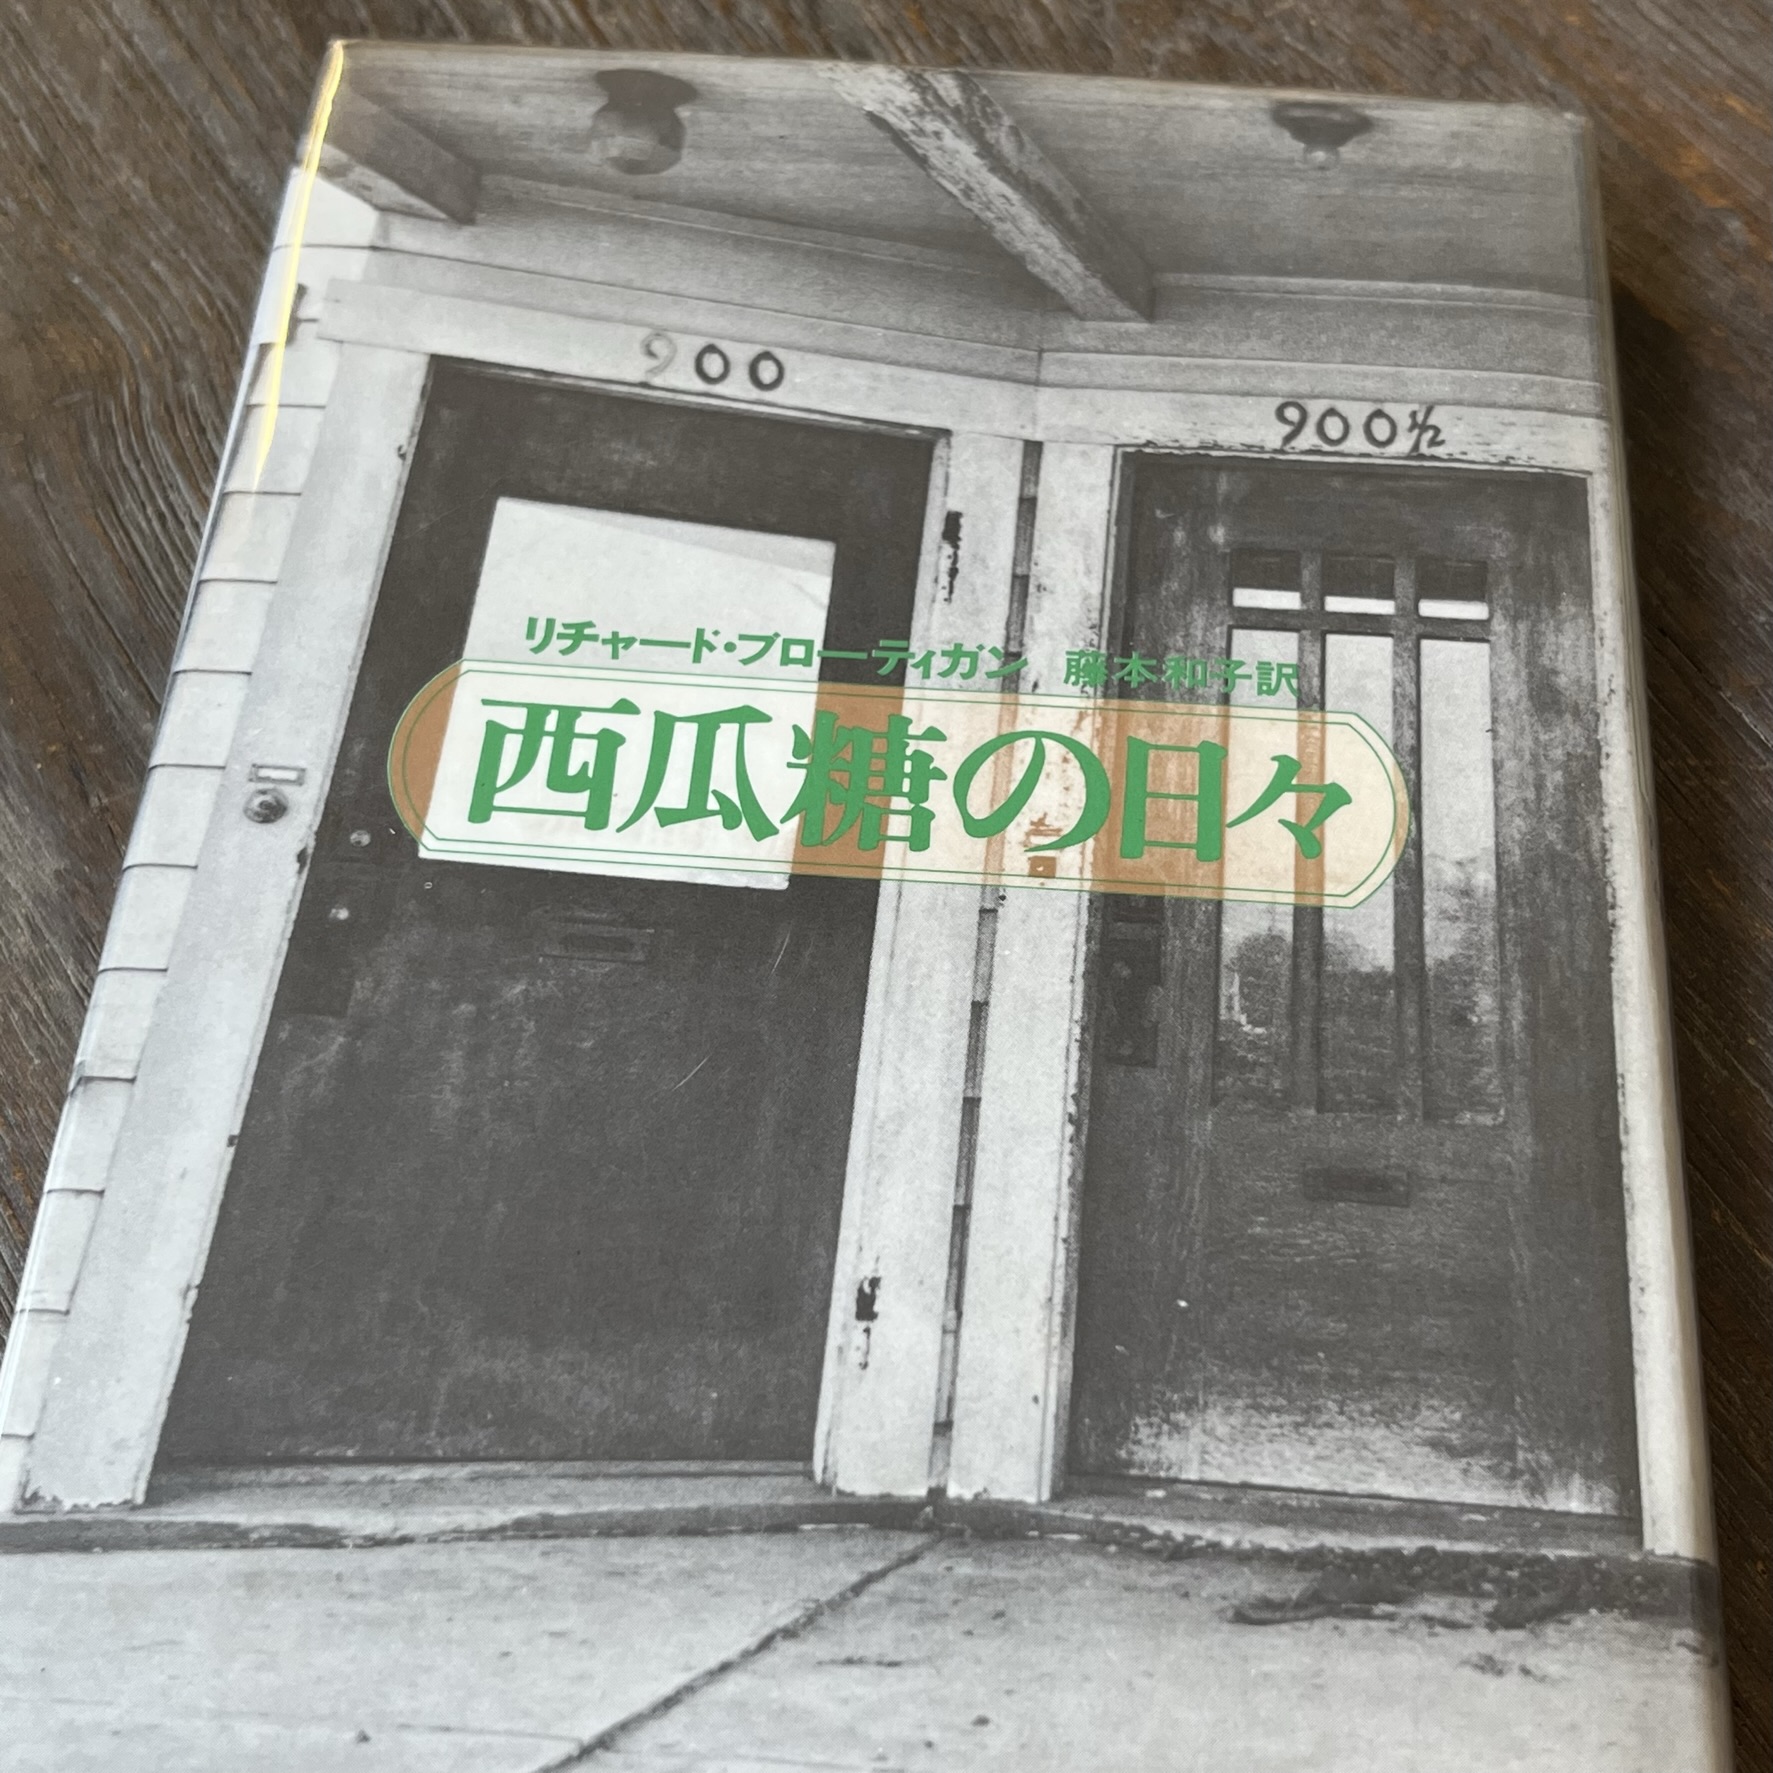 『西瓜糖の日々』の本の表紙の写真。モーテルの入口でしょうか、部屋のドアが２つ、それぞれのドアの前の天井には電灯がついています。それぞれのドアの上には「900」と「900 1/2」という文字が書かれています